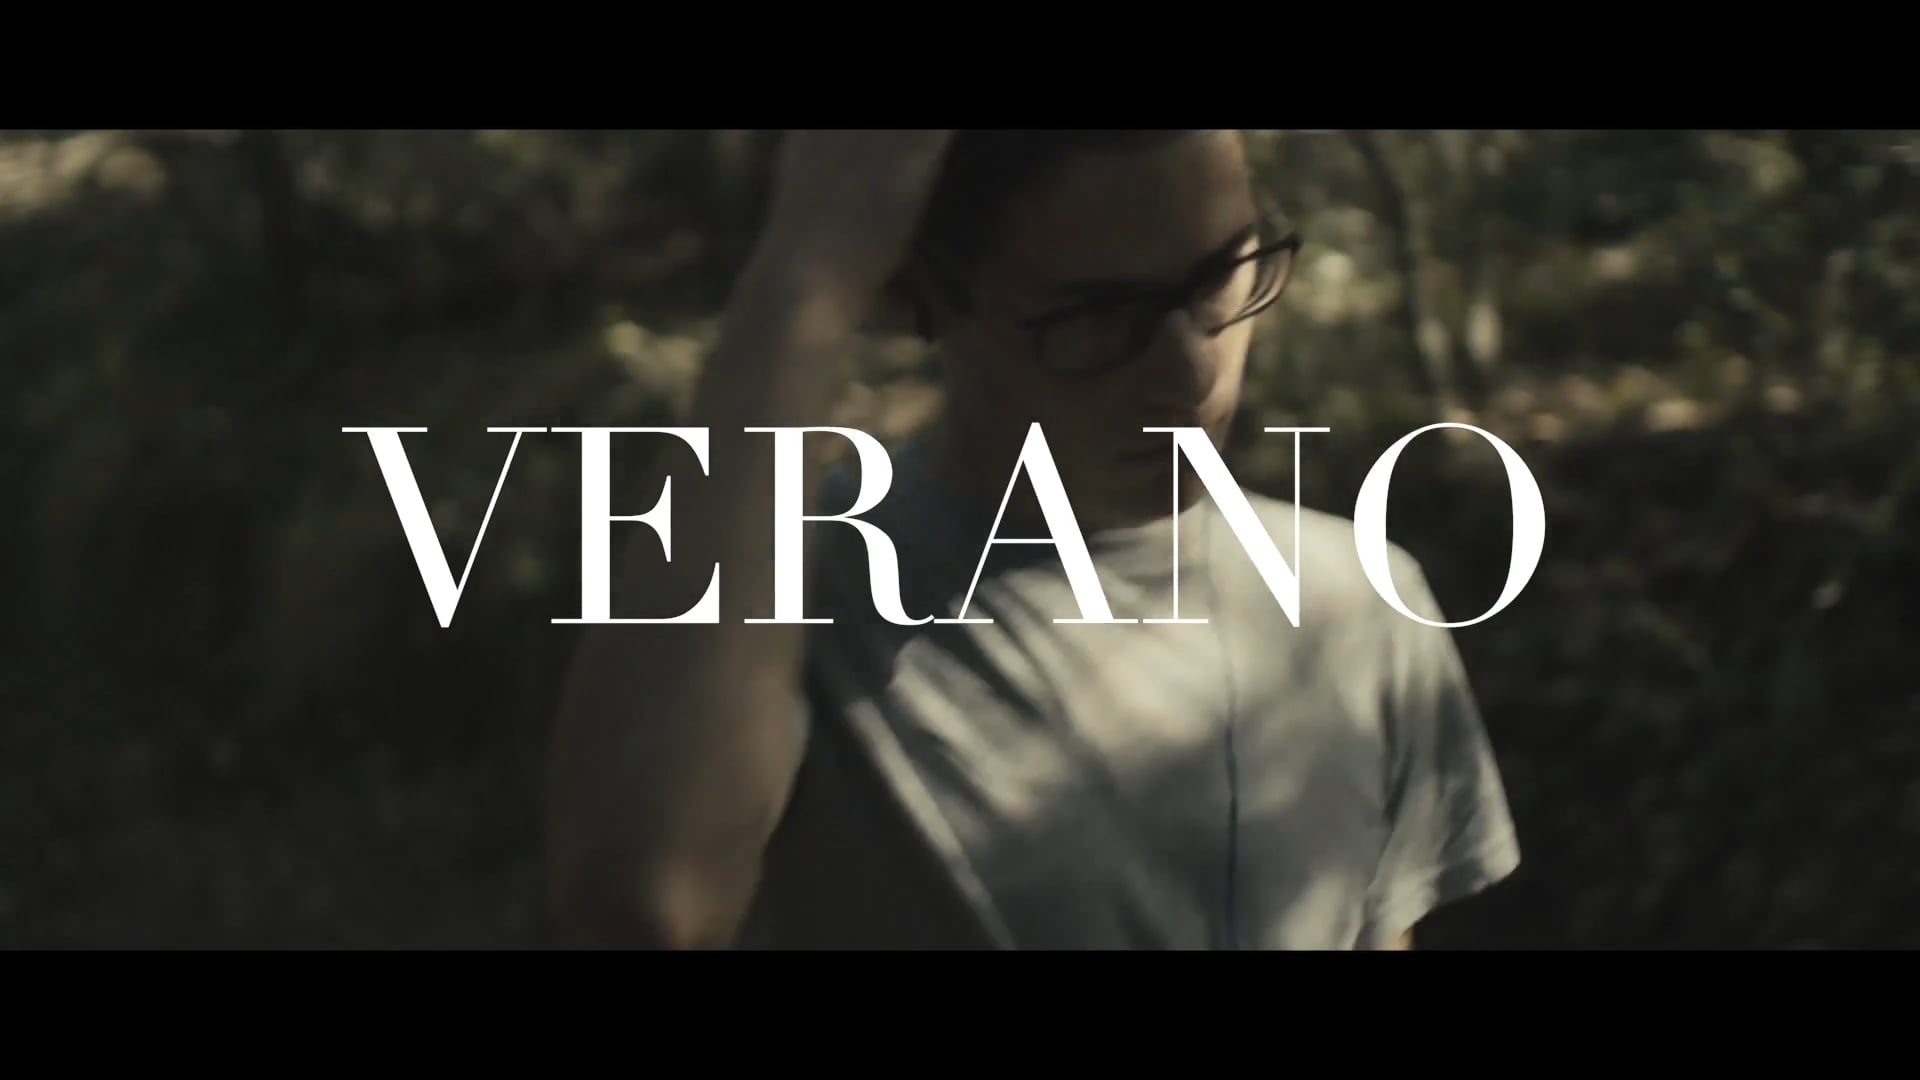 Trailer - "Verano" (Juan Antonio Valdivia, 2019)